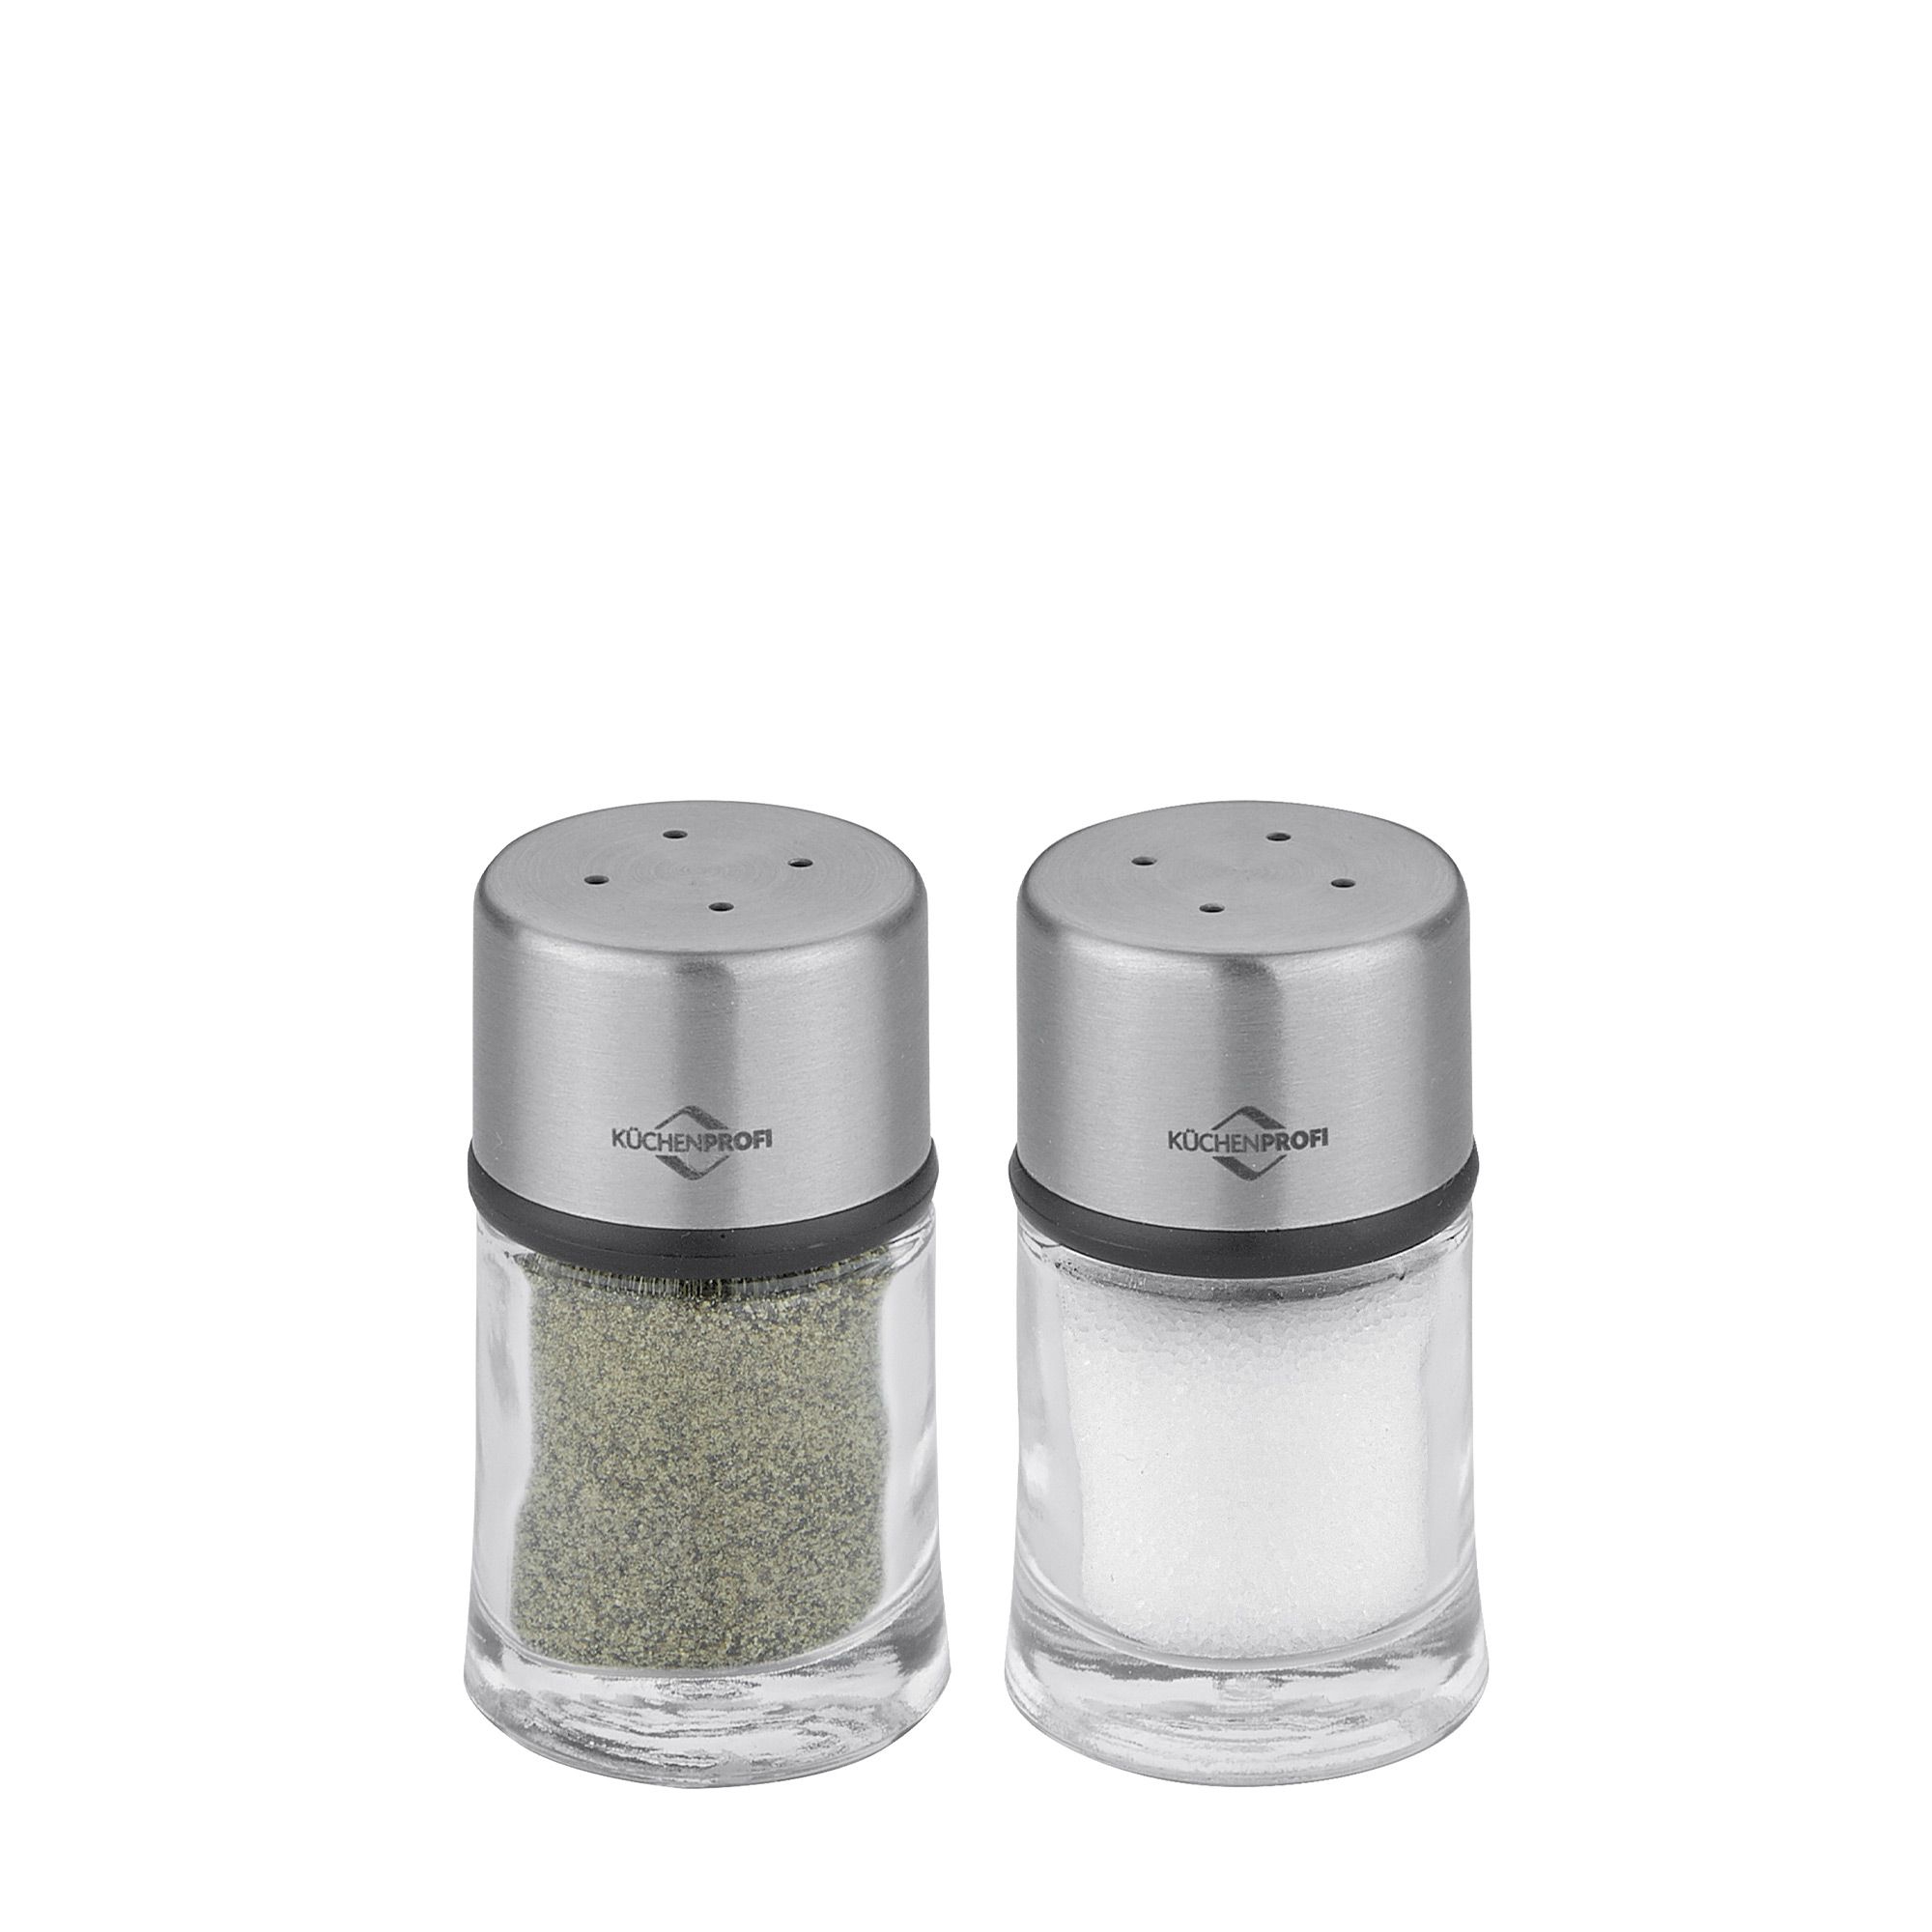 Küchenprofi - Pepper shaker/Salt shaker